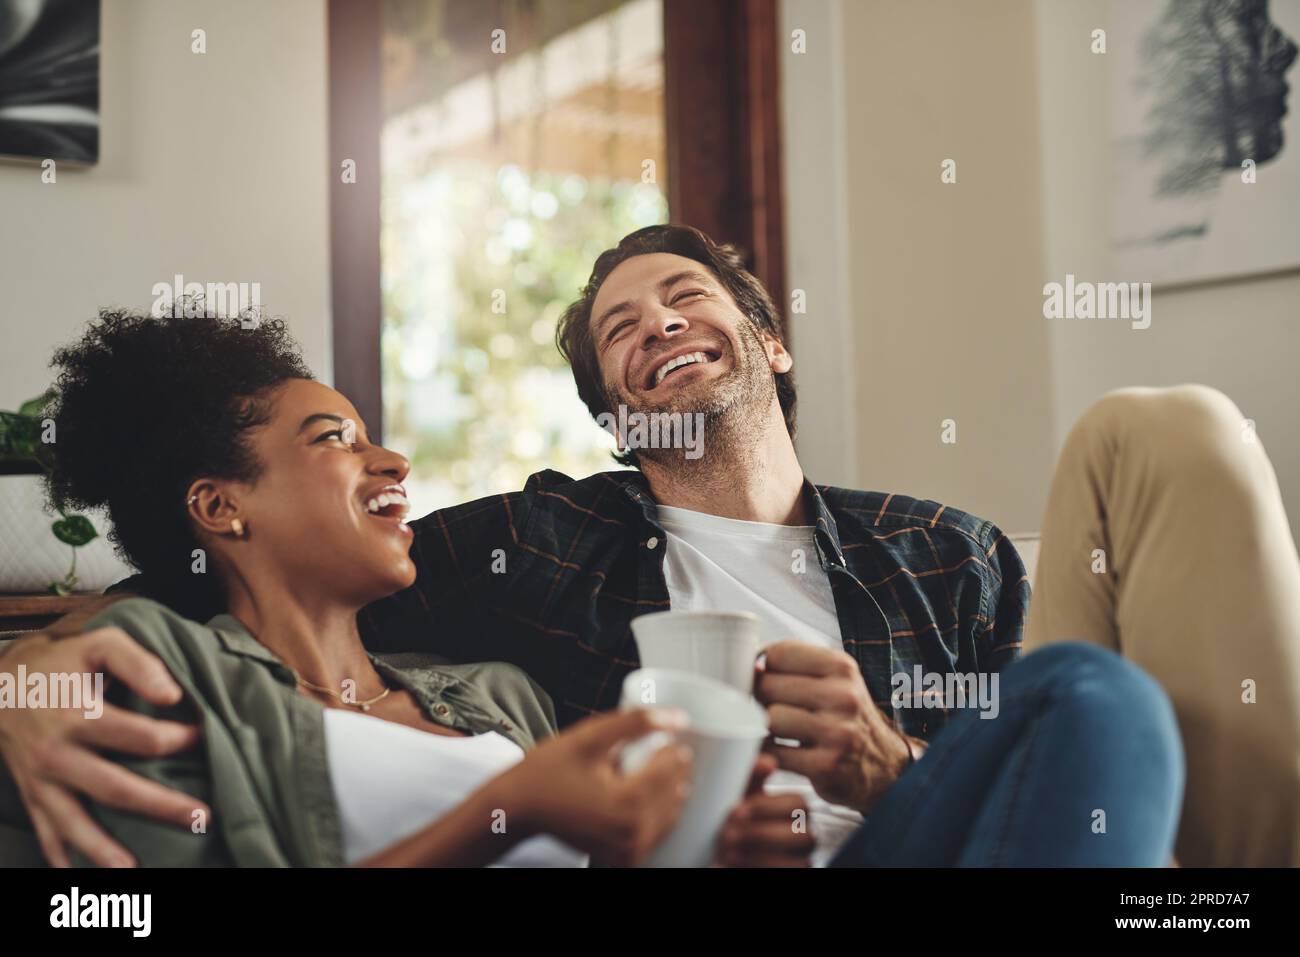 Kaffee und Gespräche. Ein glückliches junges Paar, das Kaffee trinkt und zu Hause eine schöne Zeit miteinander verbringt. Stockfoto